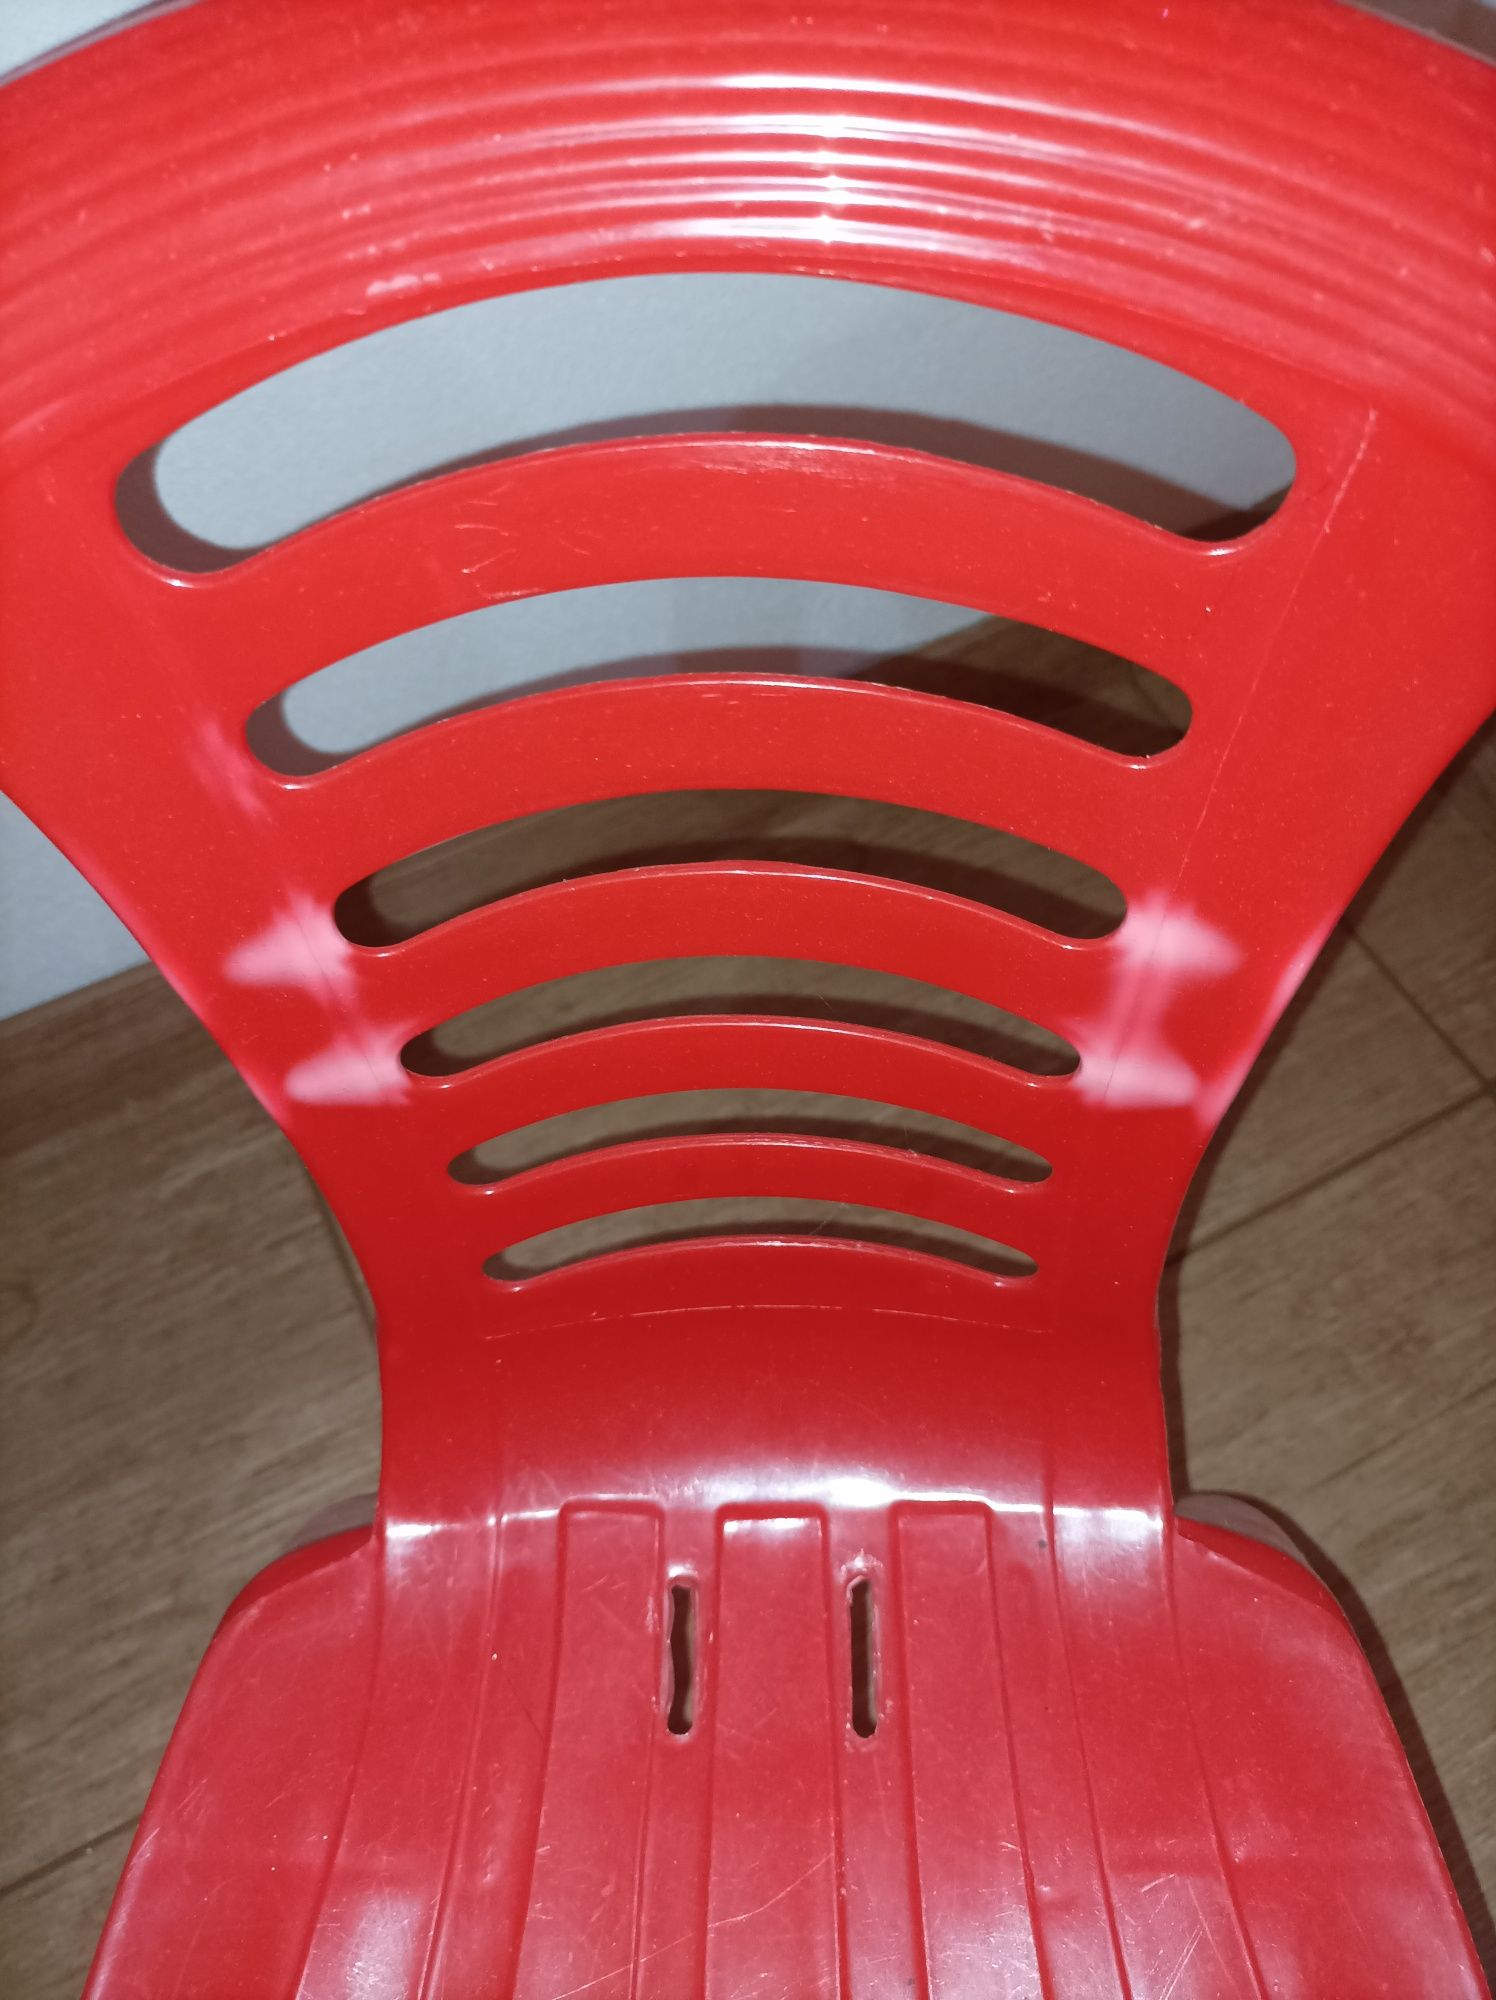 Cadeira de plástico para criança